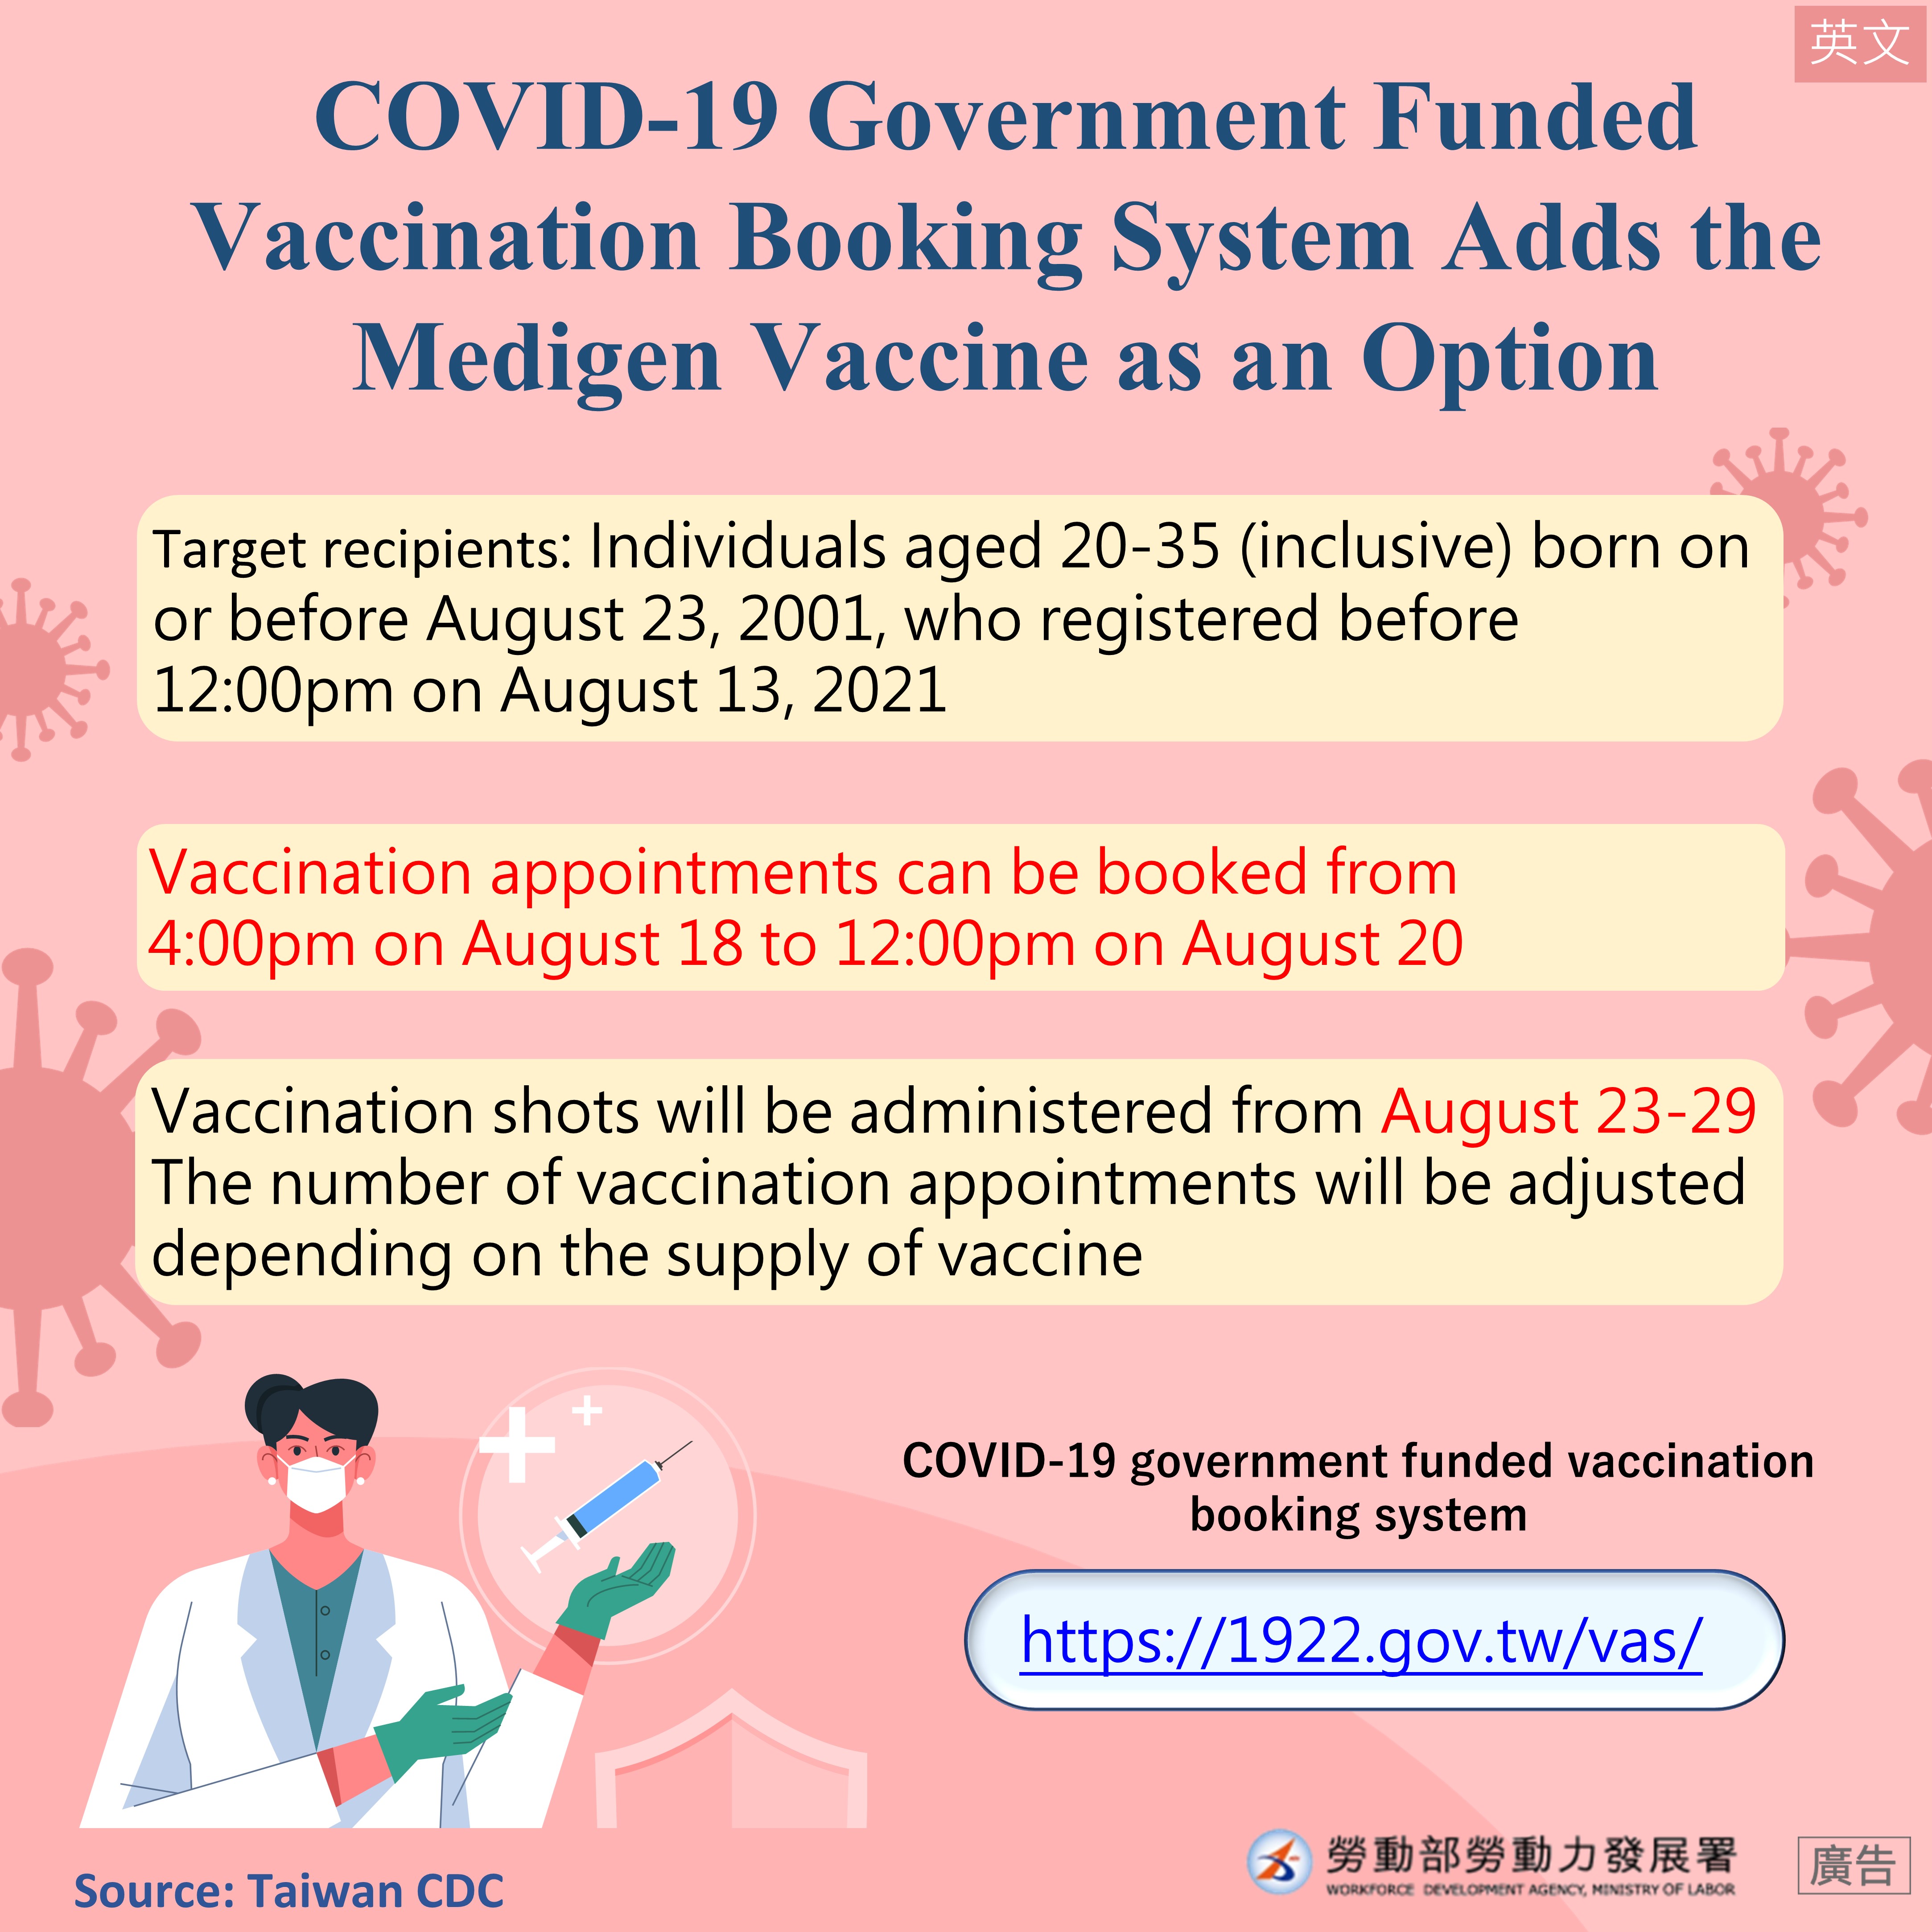 COVID-19公費疫苗預約平台增開高端疫苗預約接種對象-英文